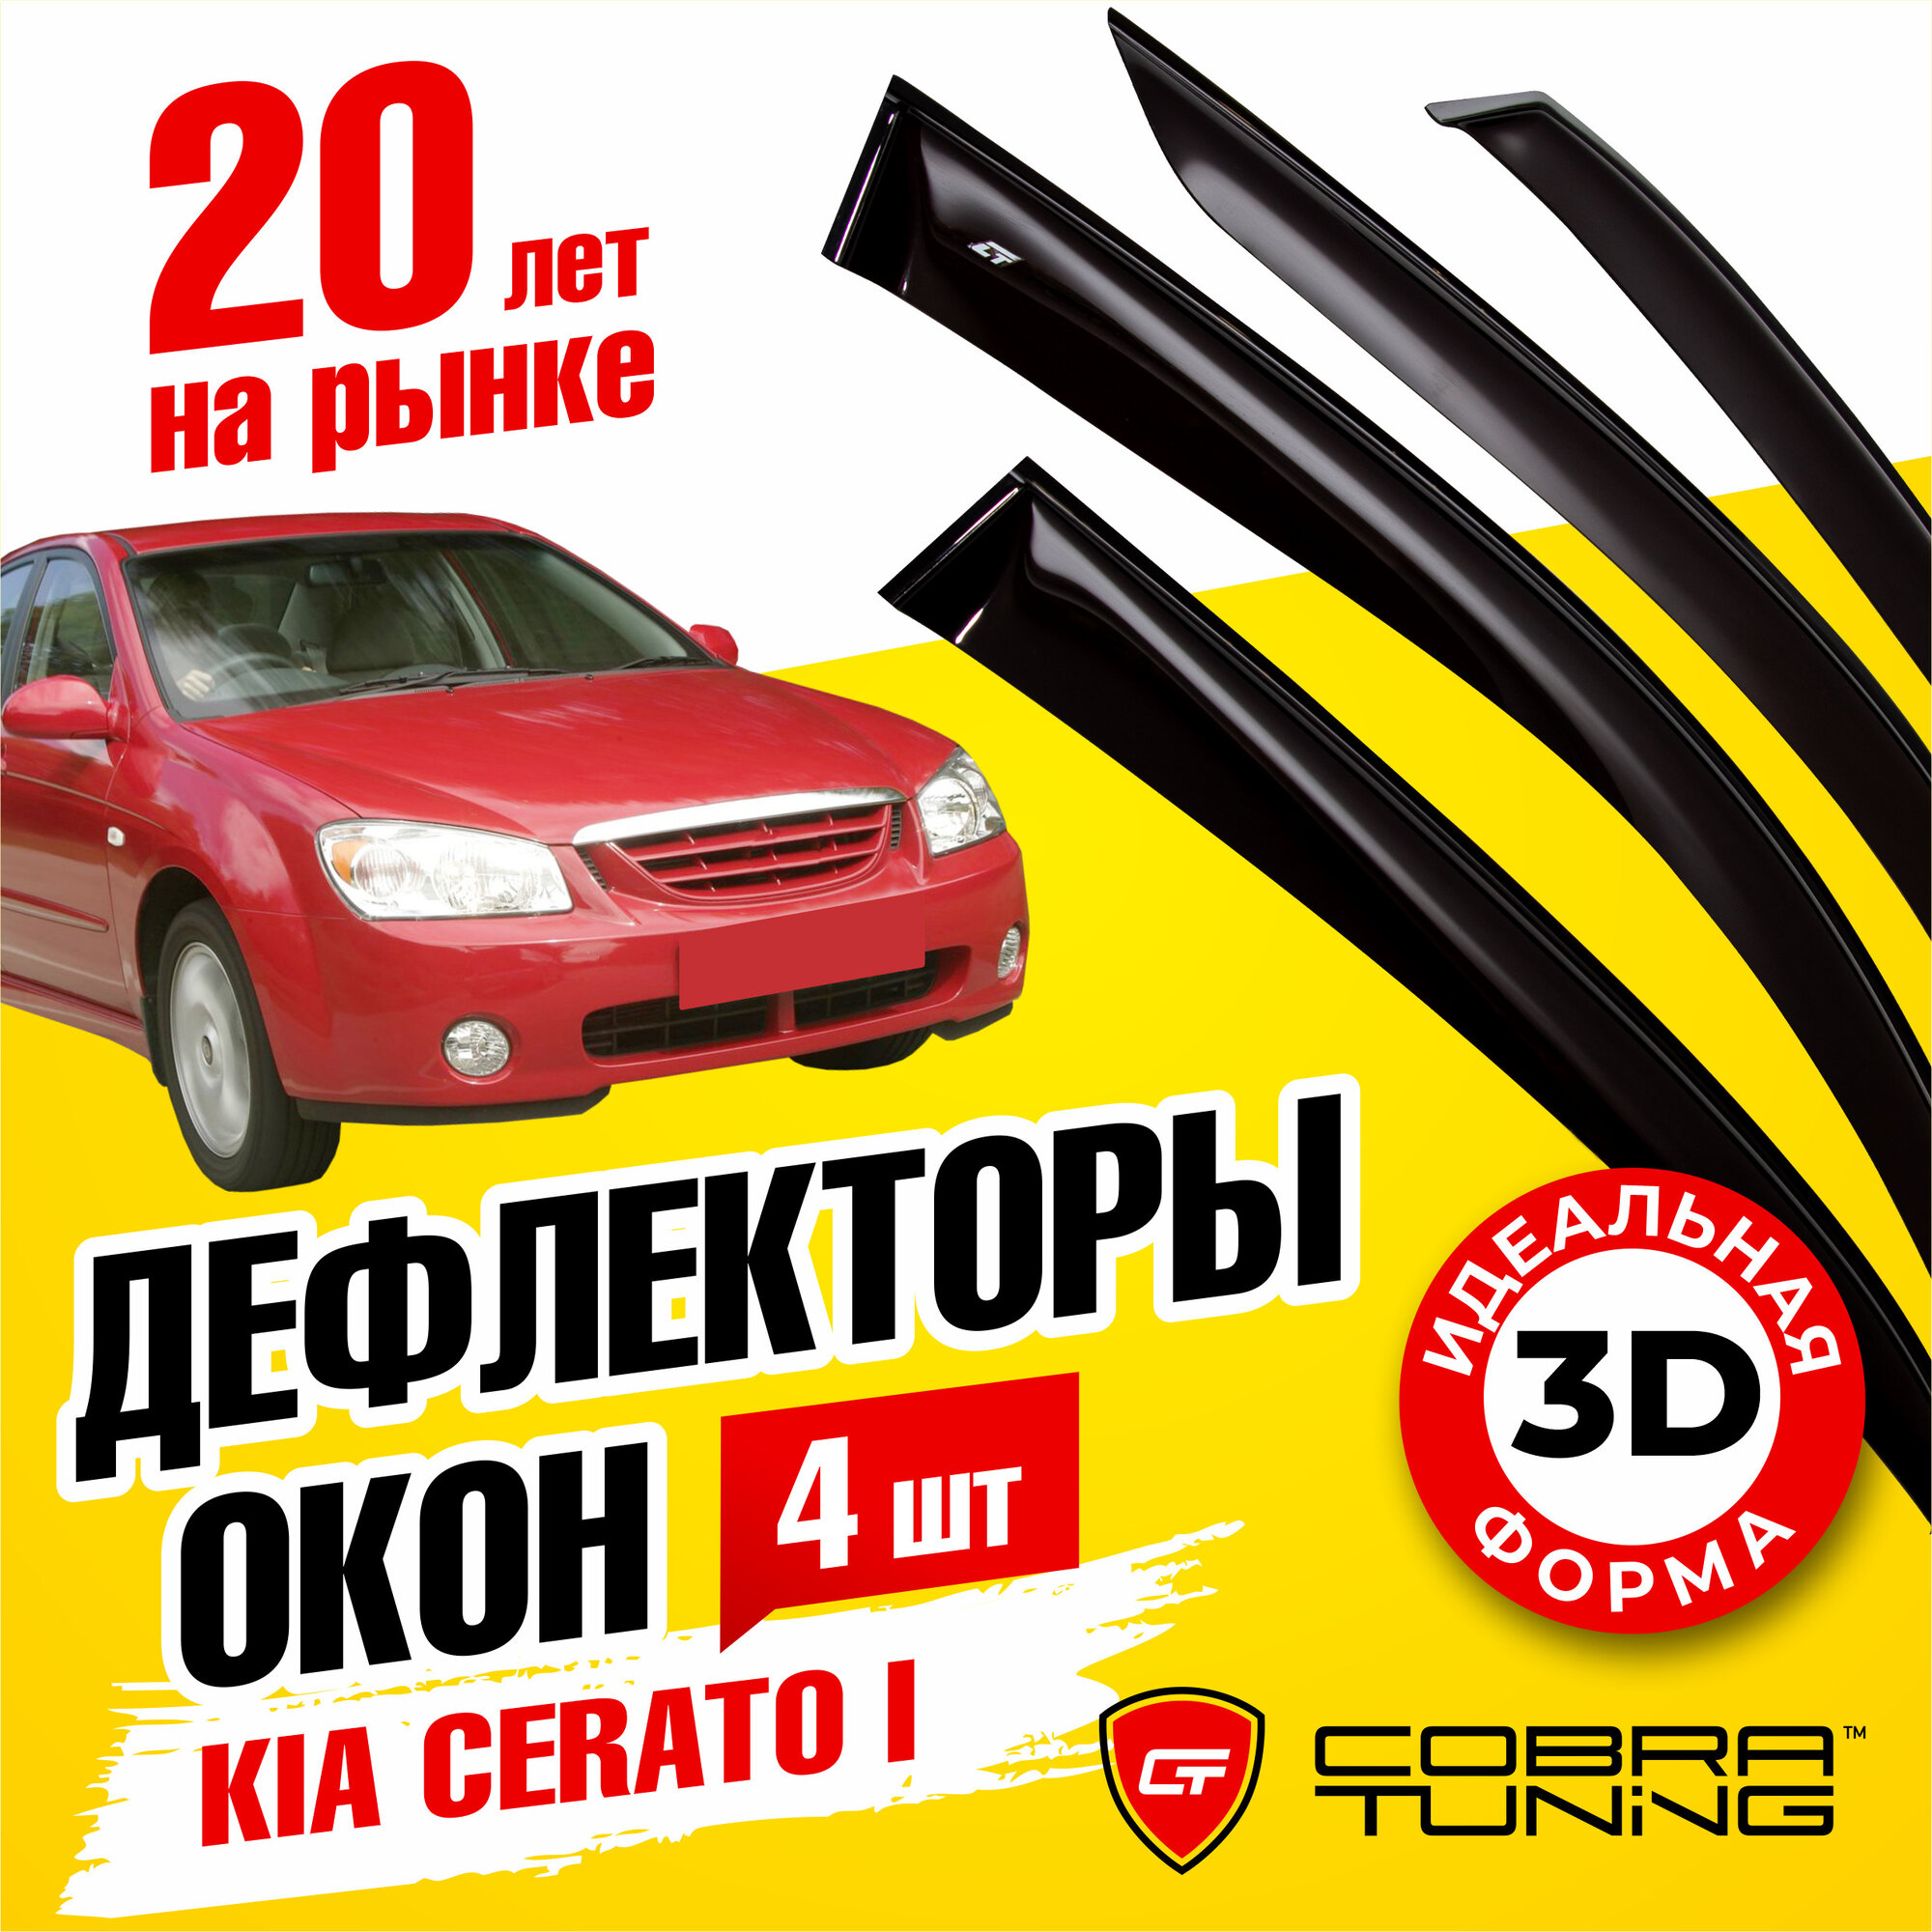 Дефлекторы боковых окон для Kia Cerato I (Киа Церато 1) седан 2004-2008, ветровики на двери автомобиля, Cobra Tuning